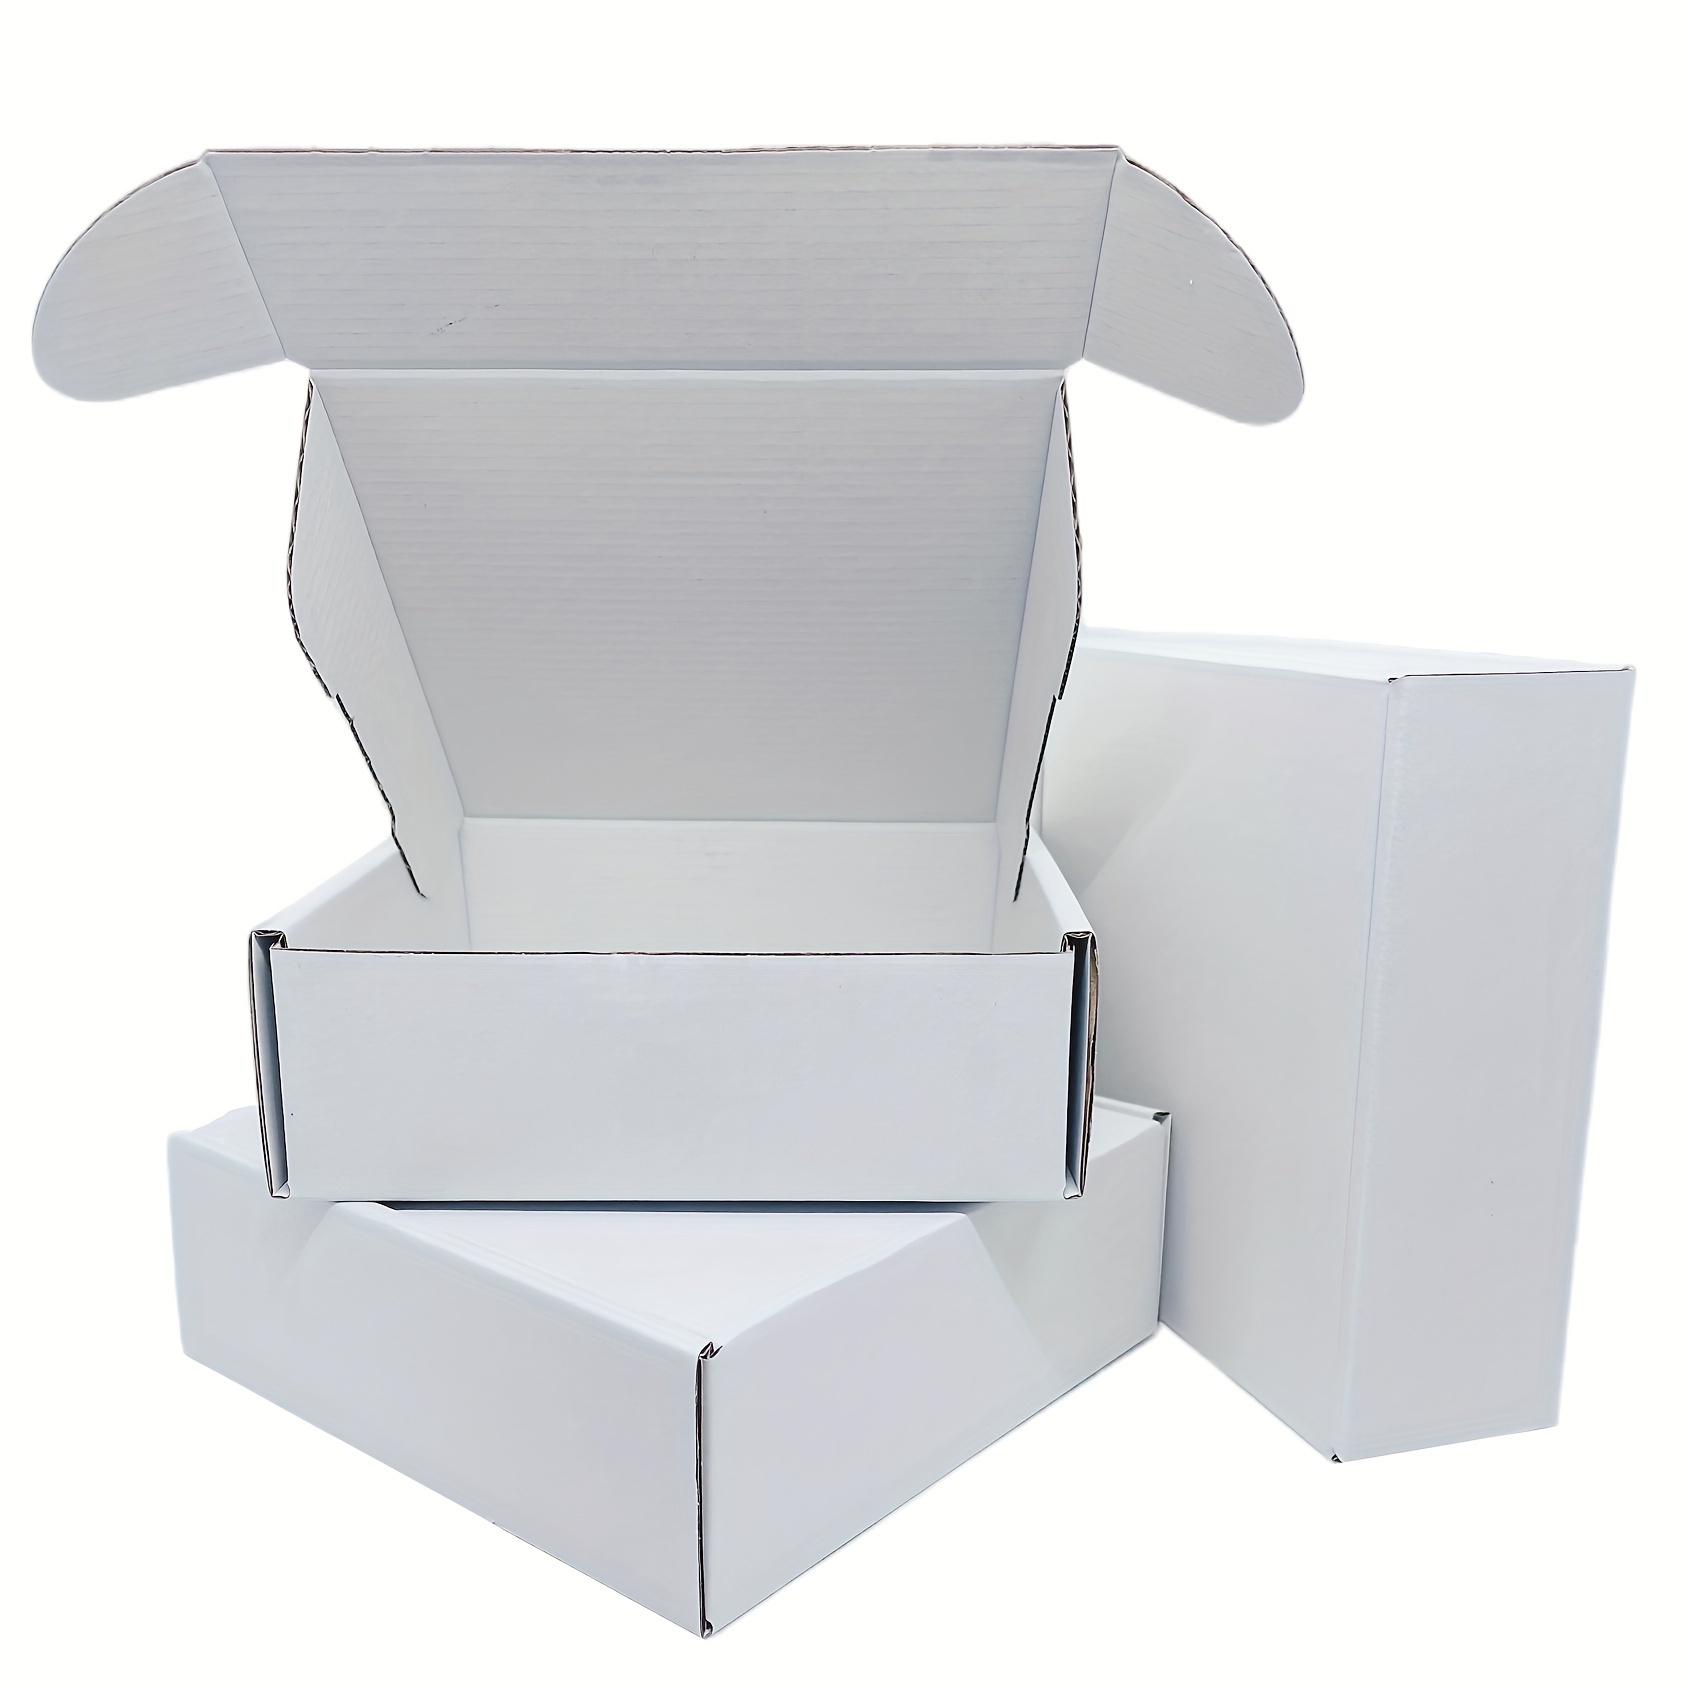 Cardboard Roll Packaging - Temu